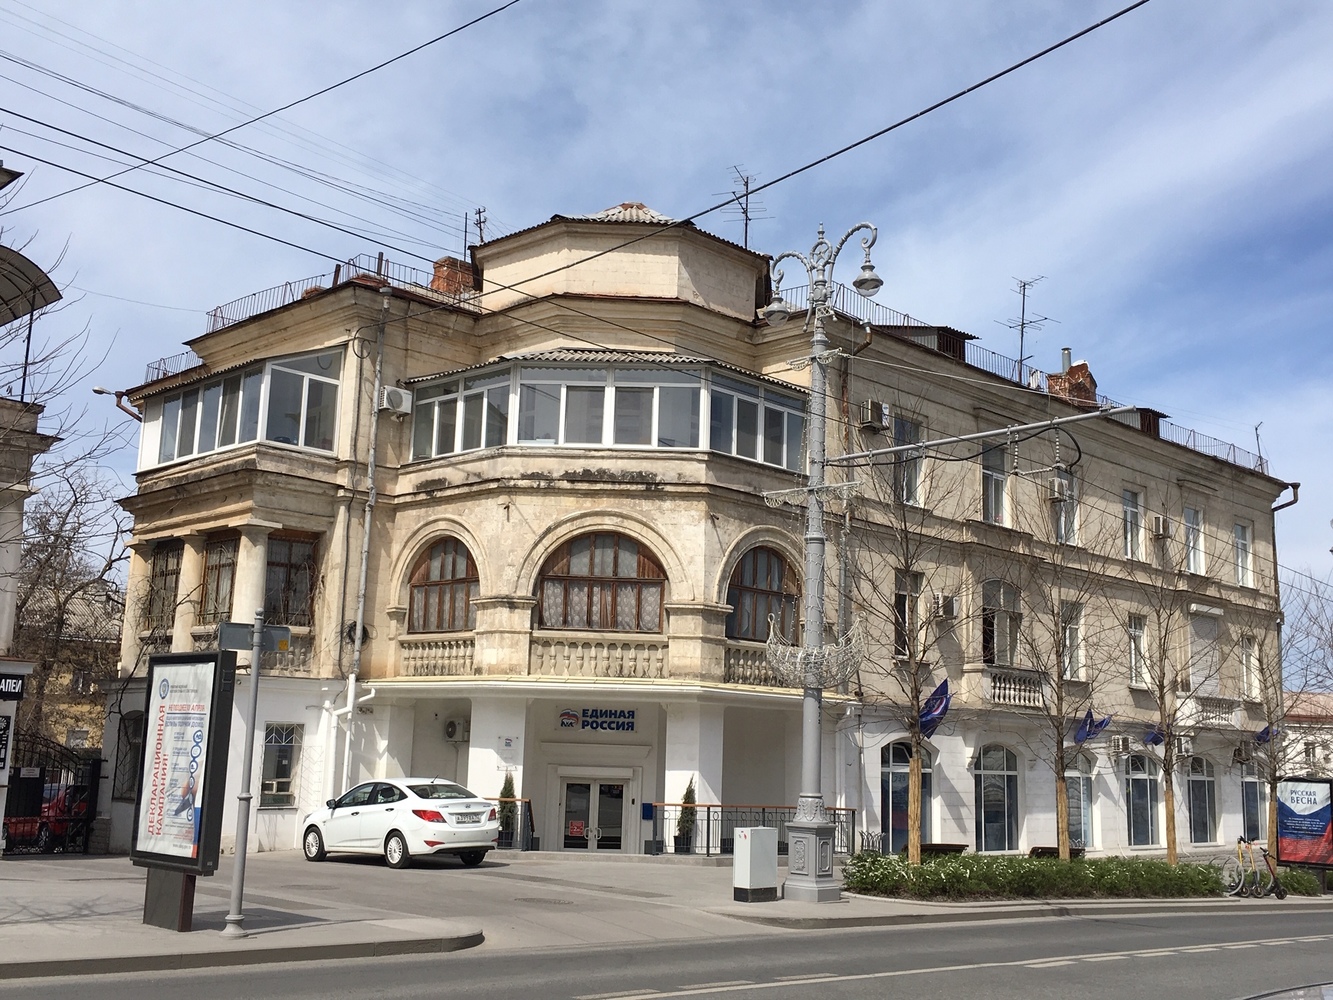 Севастополь: есть на что посмотреть пока в городе нет туристов